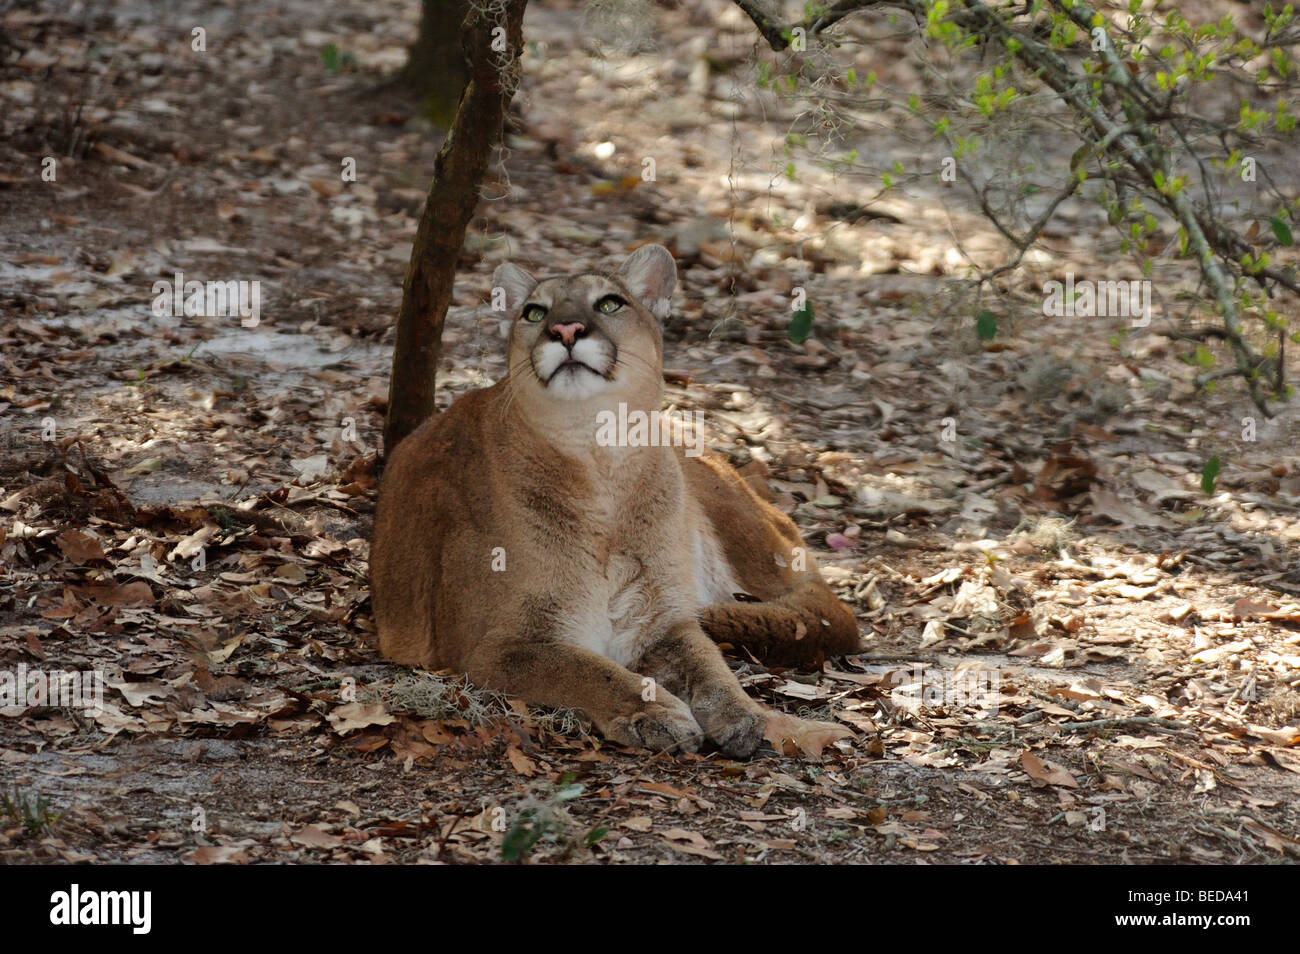 Florida Panther, Puma concolor coryi, Florida, captive Foto Stock